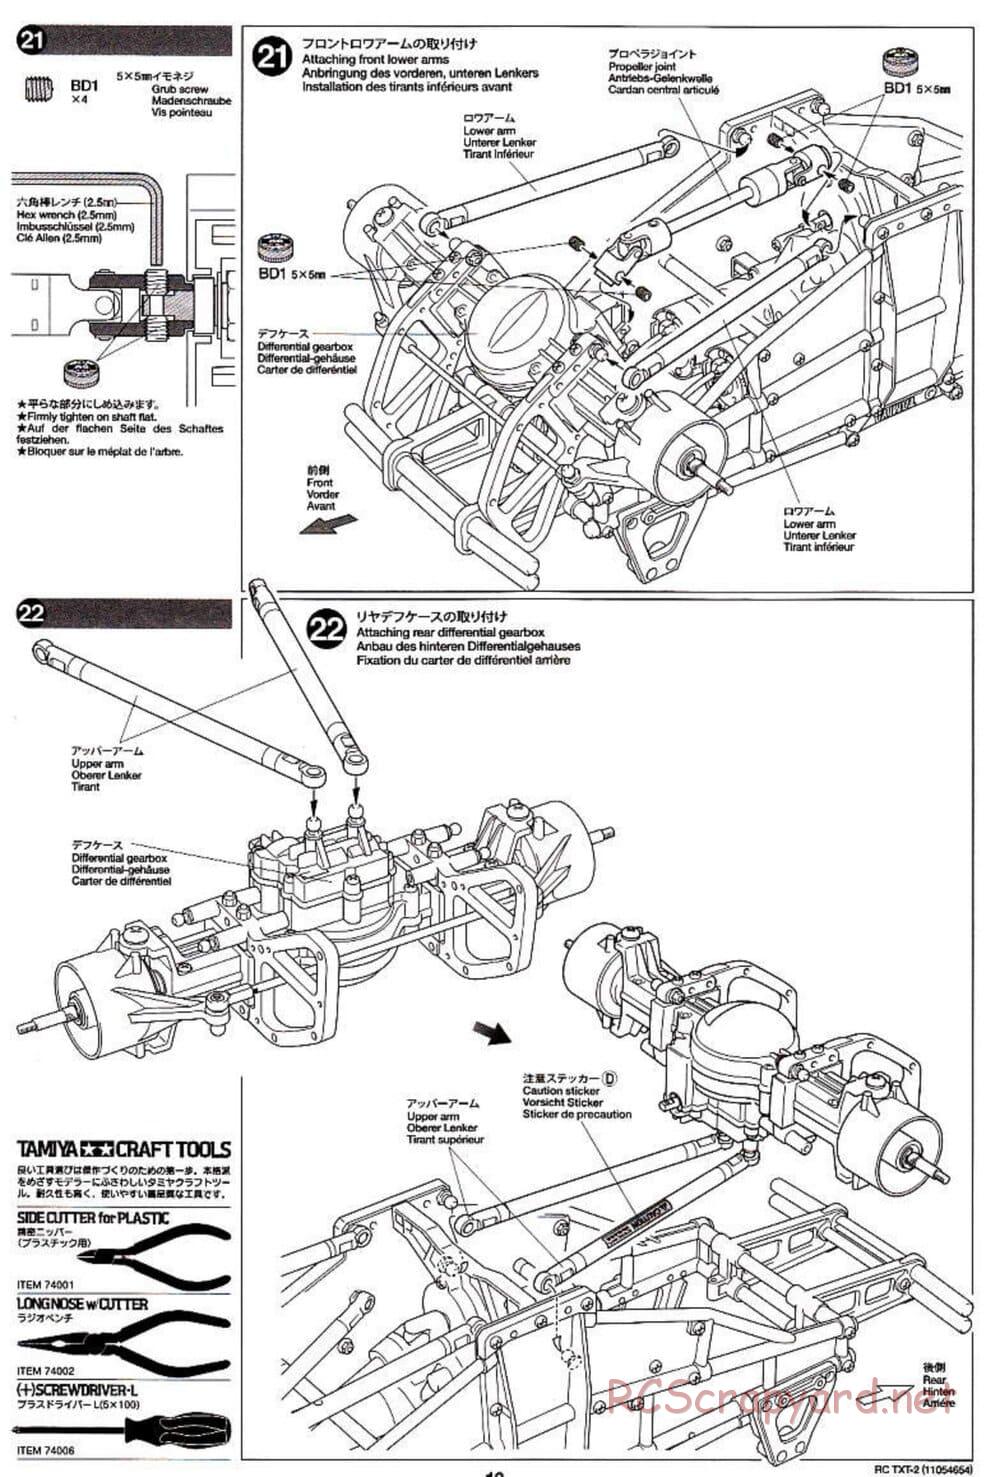 Tamiya - TXT-2 Chassis - Manual - Page 13